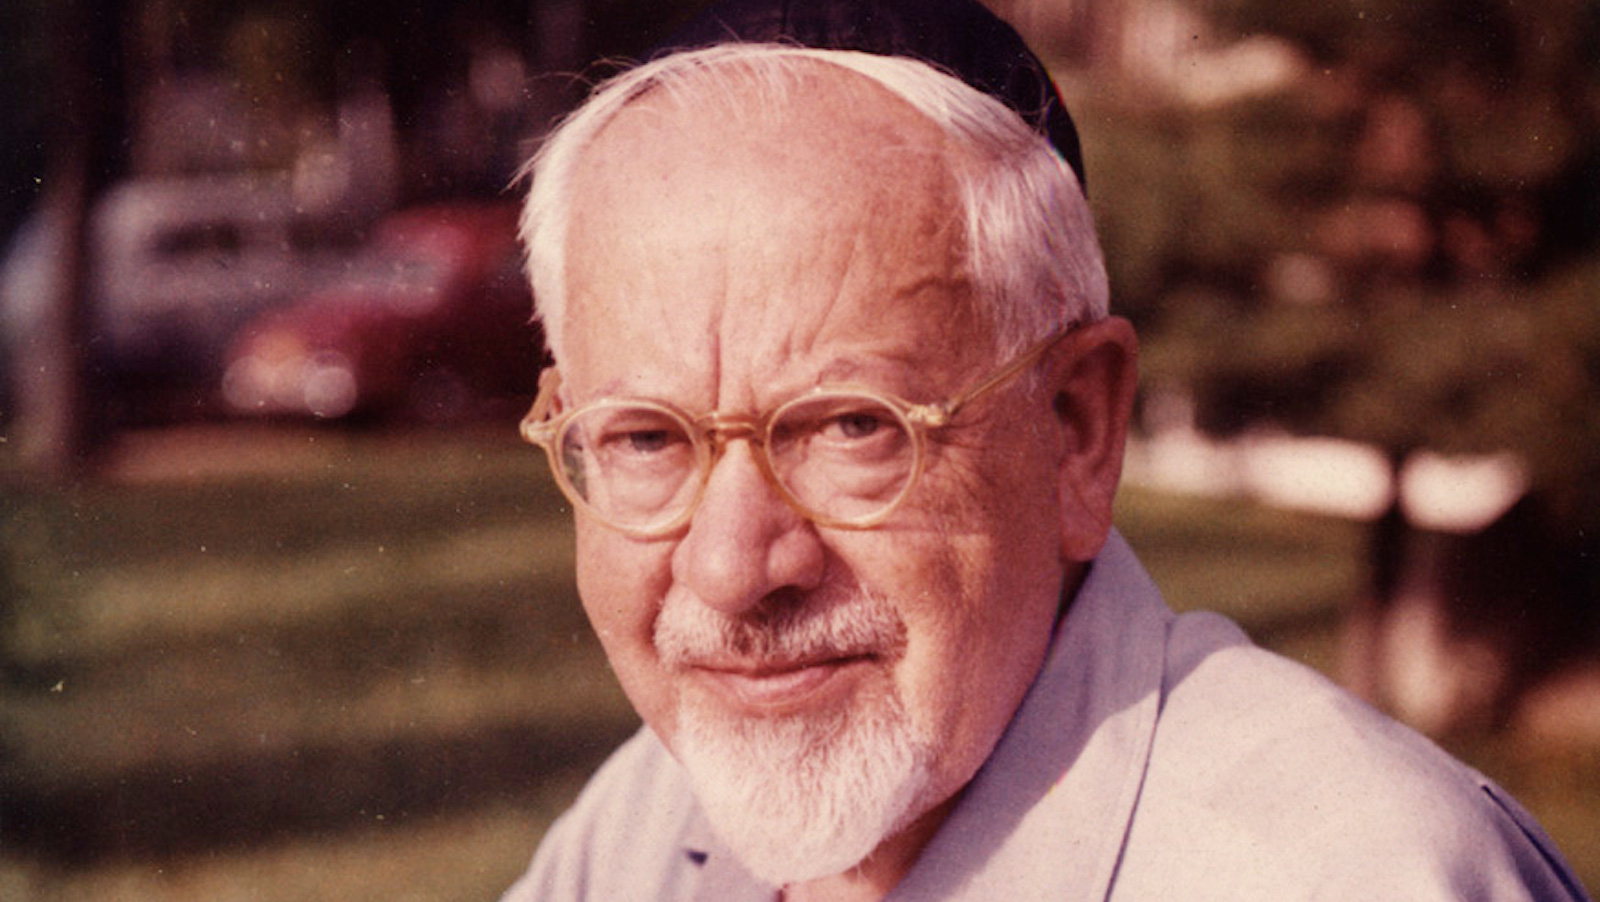 Rabbi Stone: The Life and Thought of Mordecai Kaplan